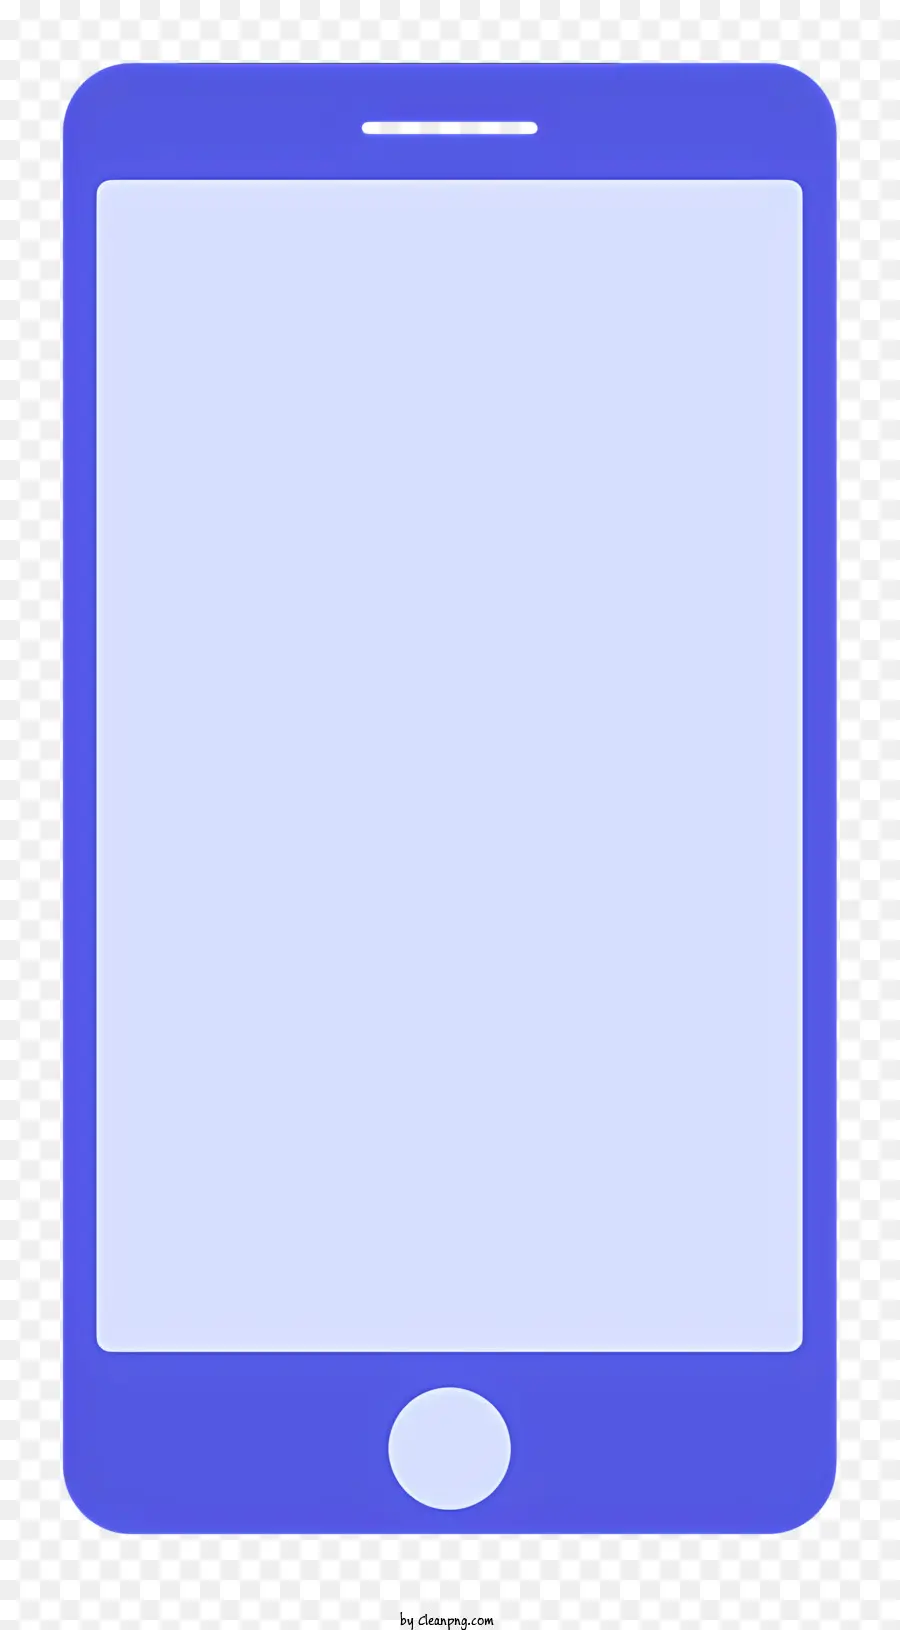 Điện thoại thông minh màu xanh màn hình trống màn hình phẳng hình chữ nhật hình chữ nhật hình chữ nhật xung quanh màn hình - Một điện thoại thông minh màu xanh rỗng có các cạnh có thể nhìn thấy